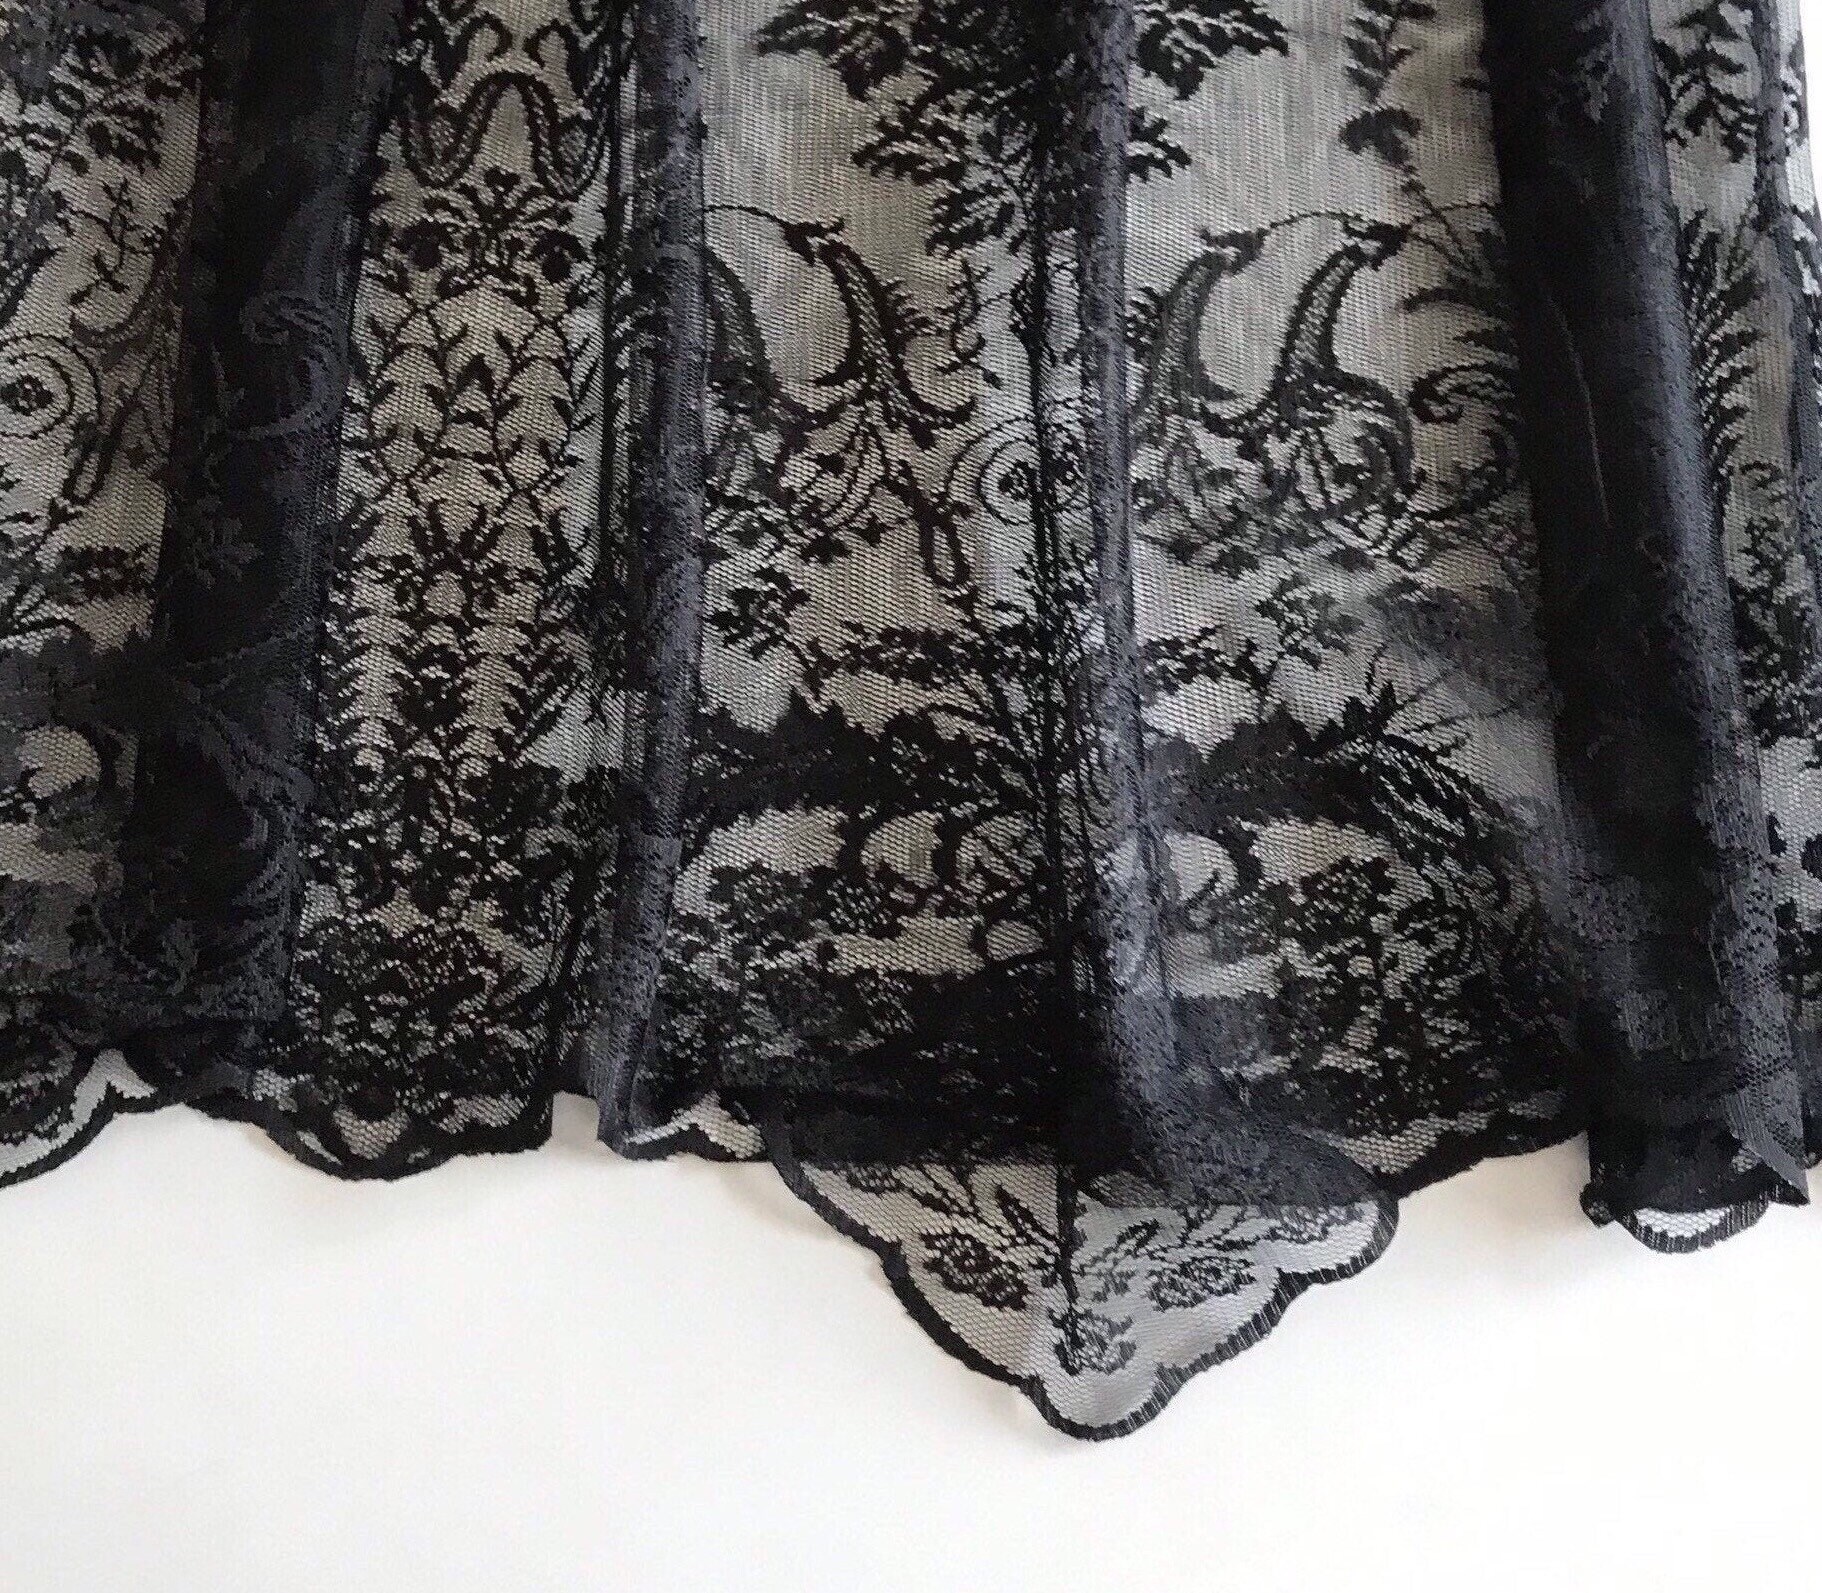 Black Lace Skirt Extender Full Length Dress Extender Black - Etsy UK